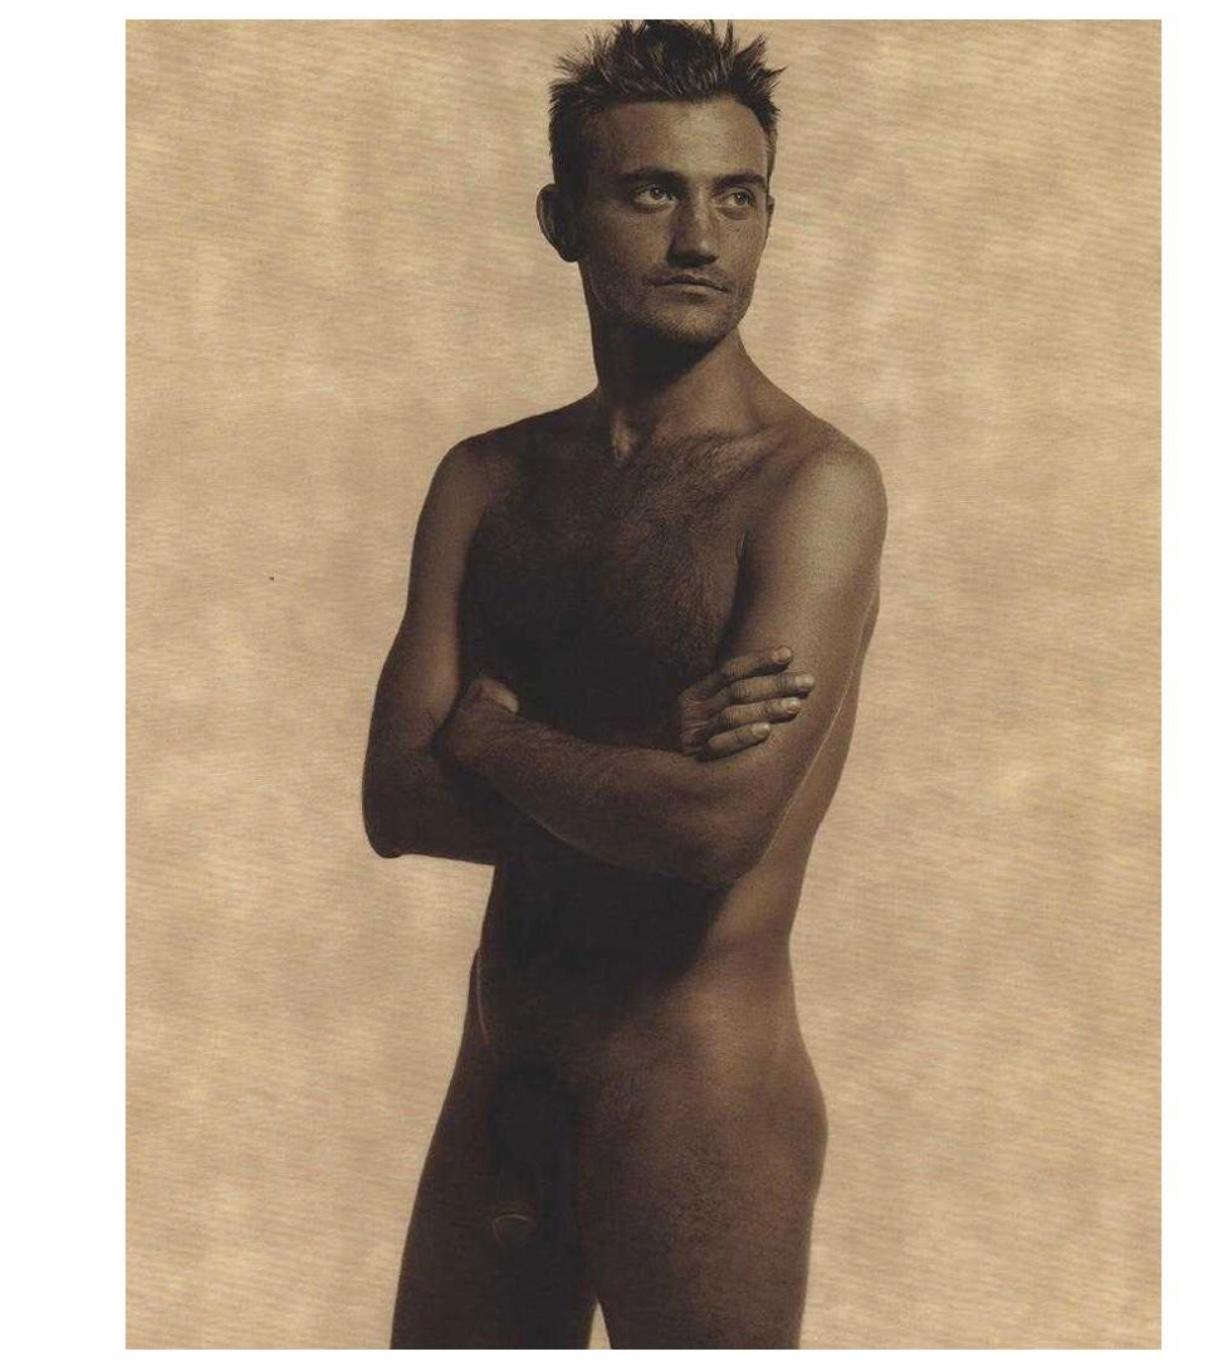 Wunderschöner Fotodruck des berühmten Fotografen und Modedesigners Karl Lagerfeld von Max Delorme. Das Bild wurde 1997 als satinierte Umber-Fotolithografie gedruckt. Maße: 10,75 x 13,25 Zoll. Ungerahmt.
 